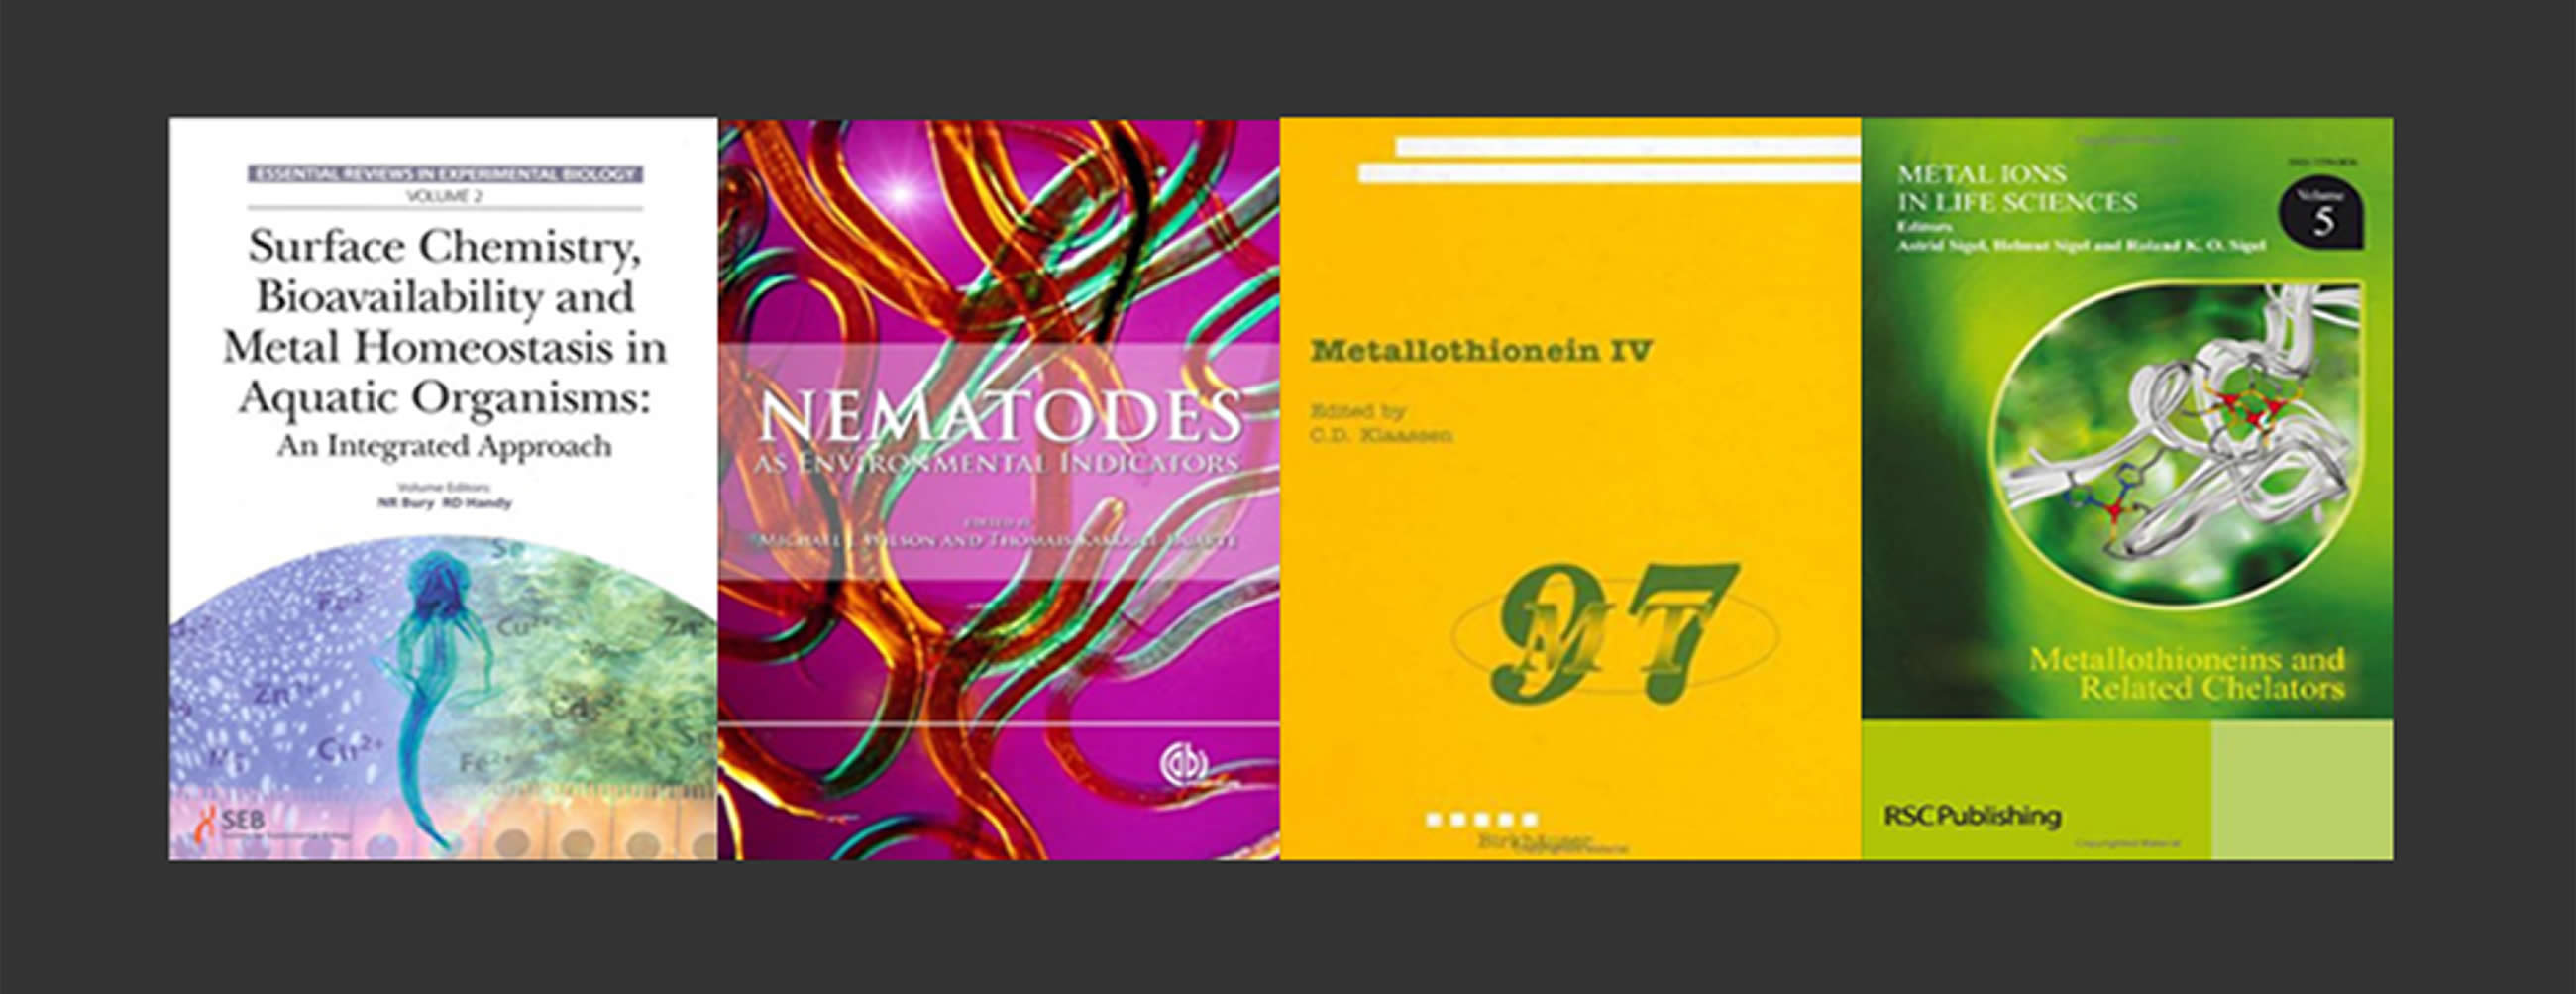 Toxicogenomics Publications